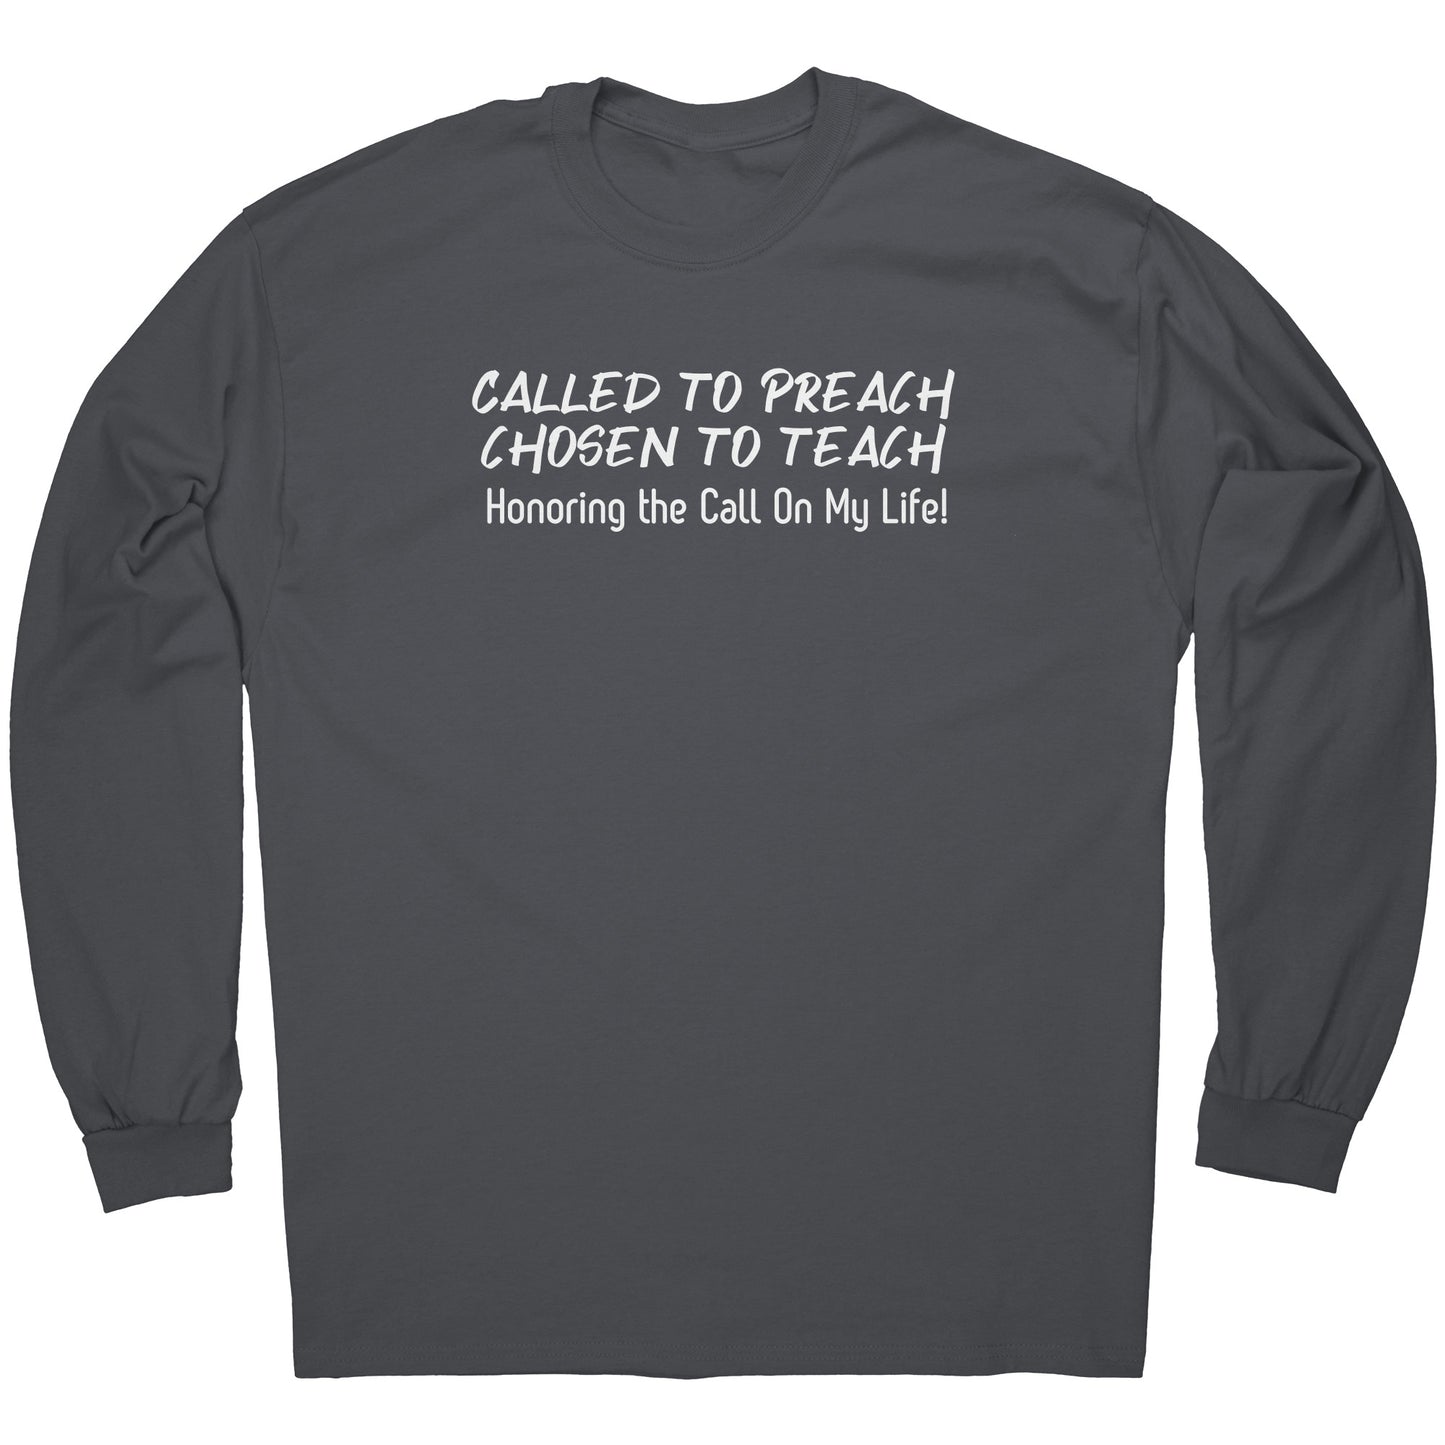 Called to Preach & Teach Long Sleeve Tee - CWSDezign